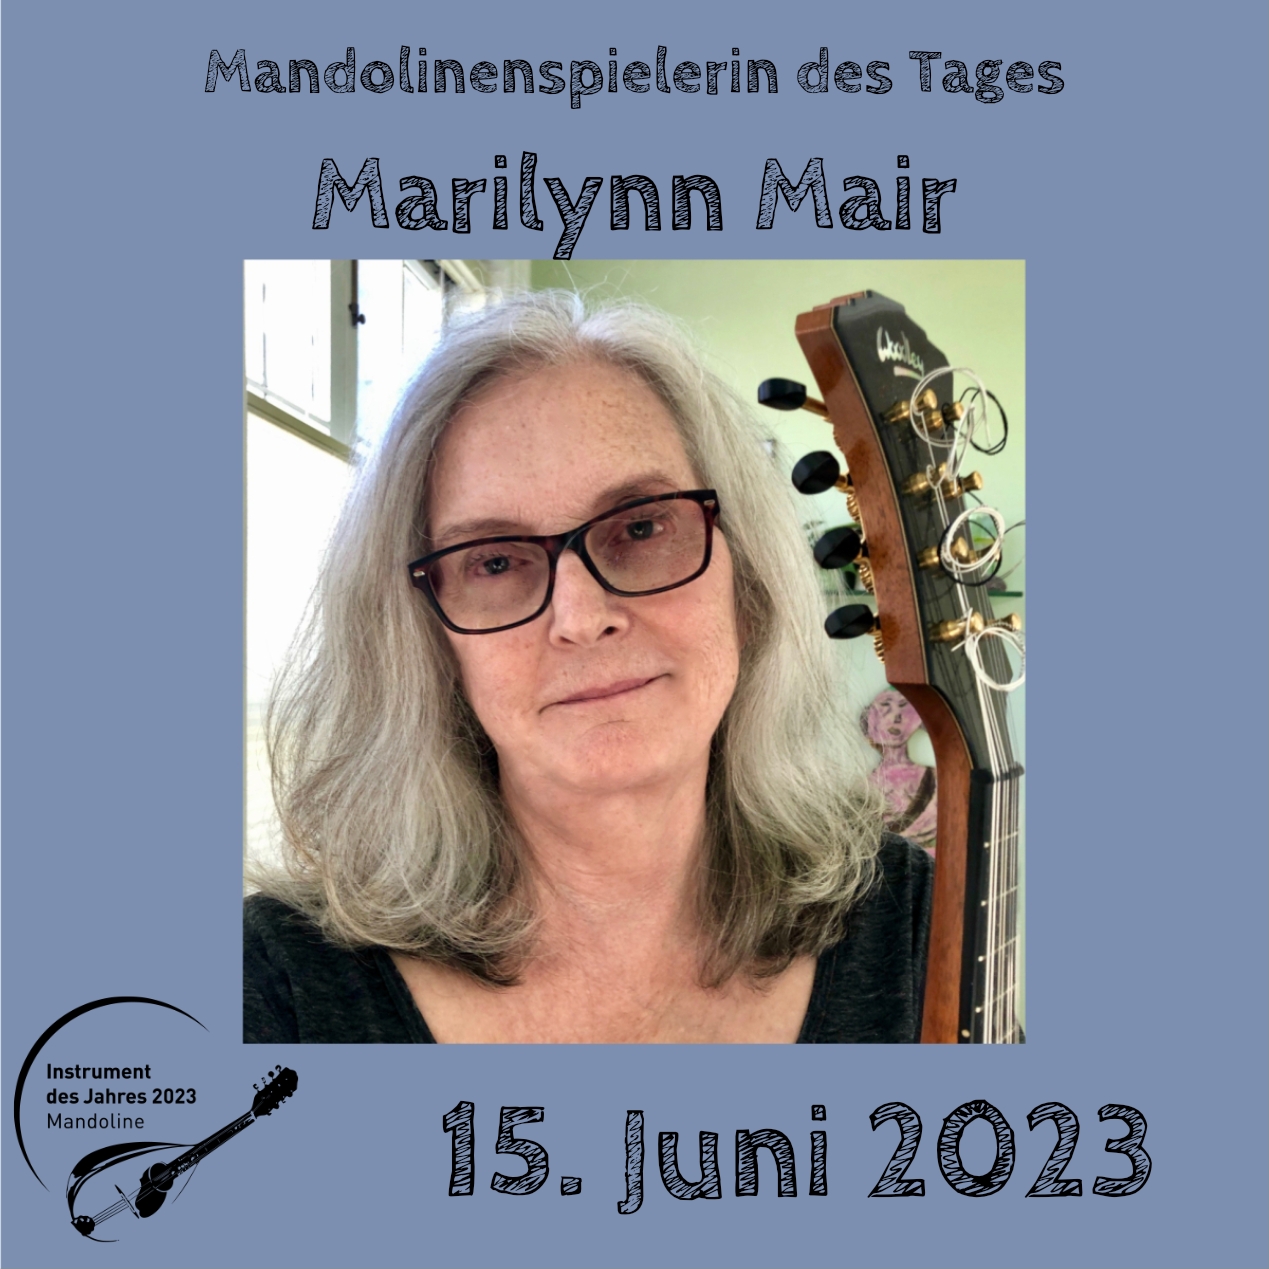 15. Juni - Marilynn Mair Mandoline Instrument des Jahres 2023 Mandolinenspieler Mandolinenspielerin des Tages